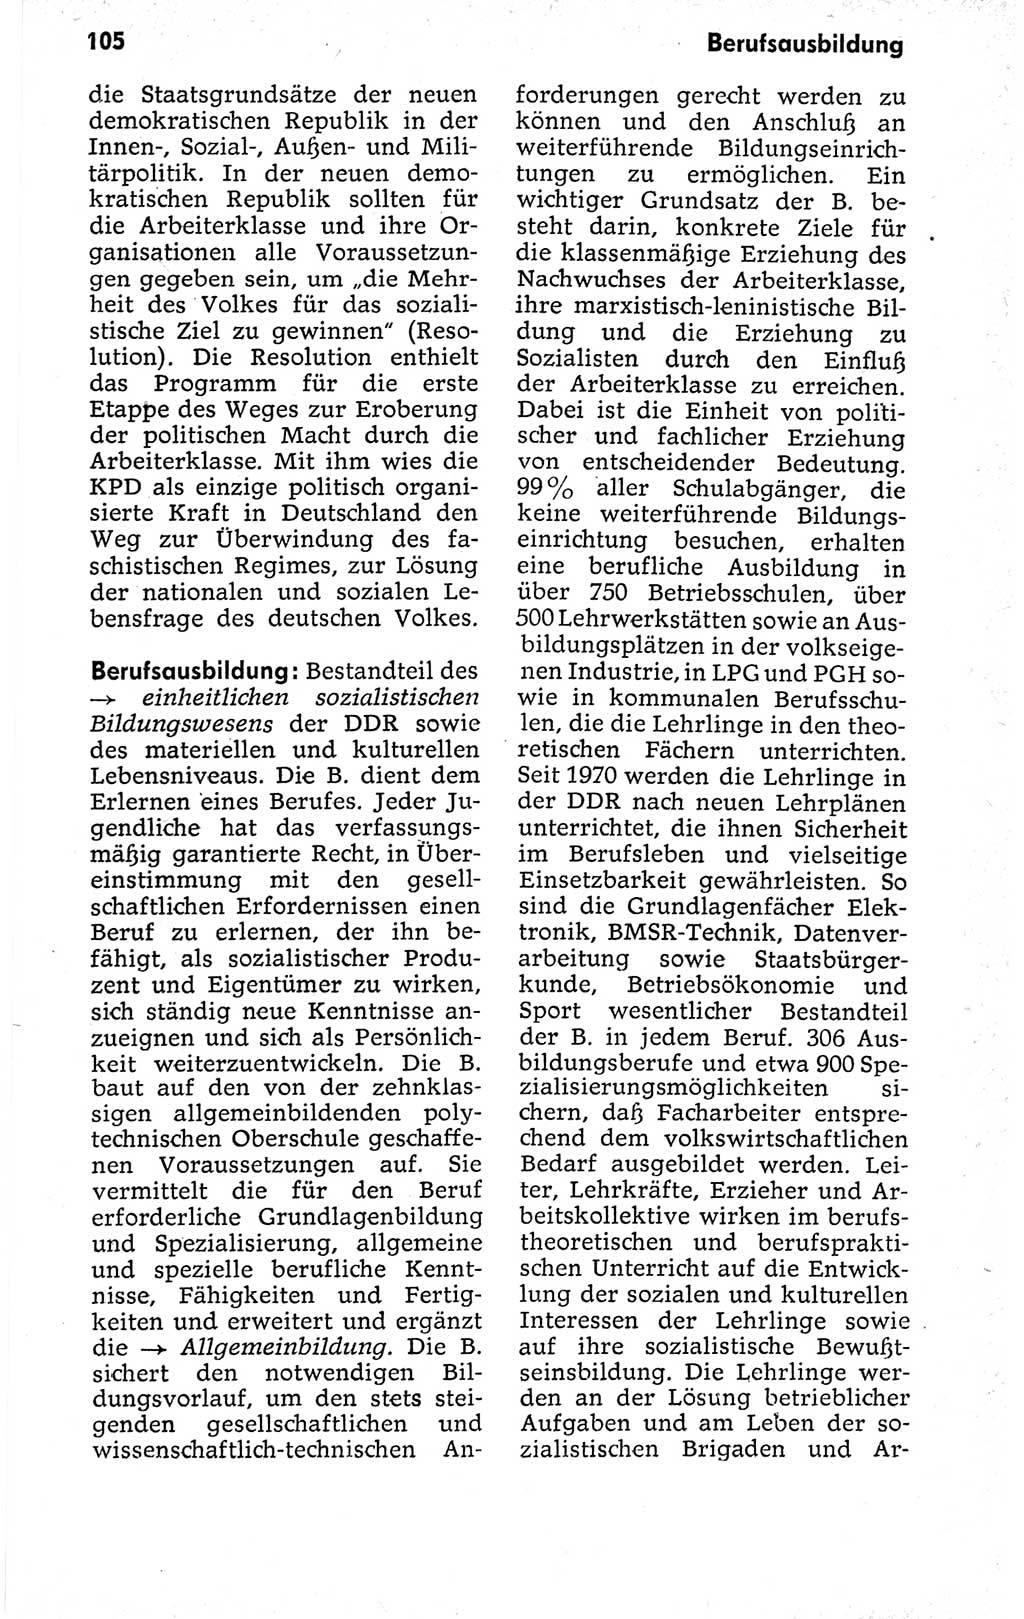 Kleines politisches Wörterbuch [Deutsche Demokratische Republik (DDR)] 1973, Seite 105 (Kl. pol. Wb. DDR 1973, S. 105)